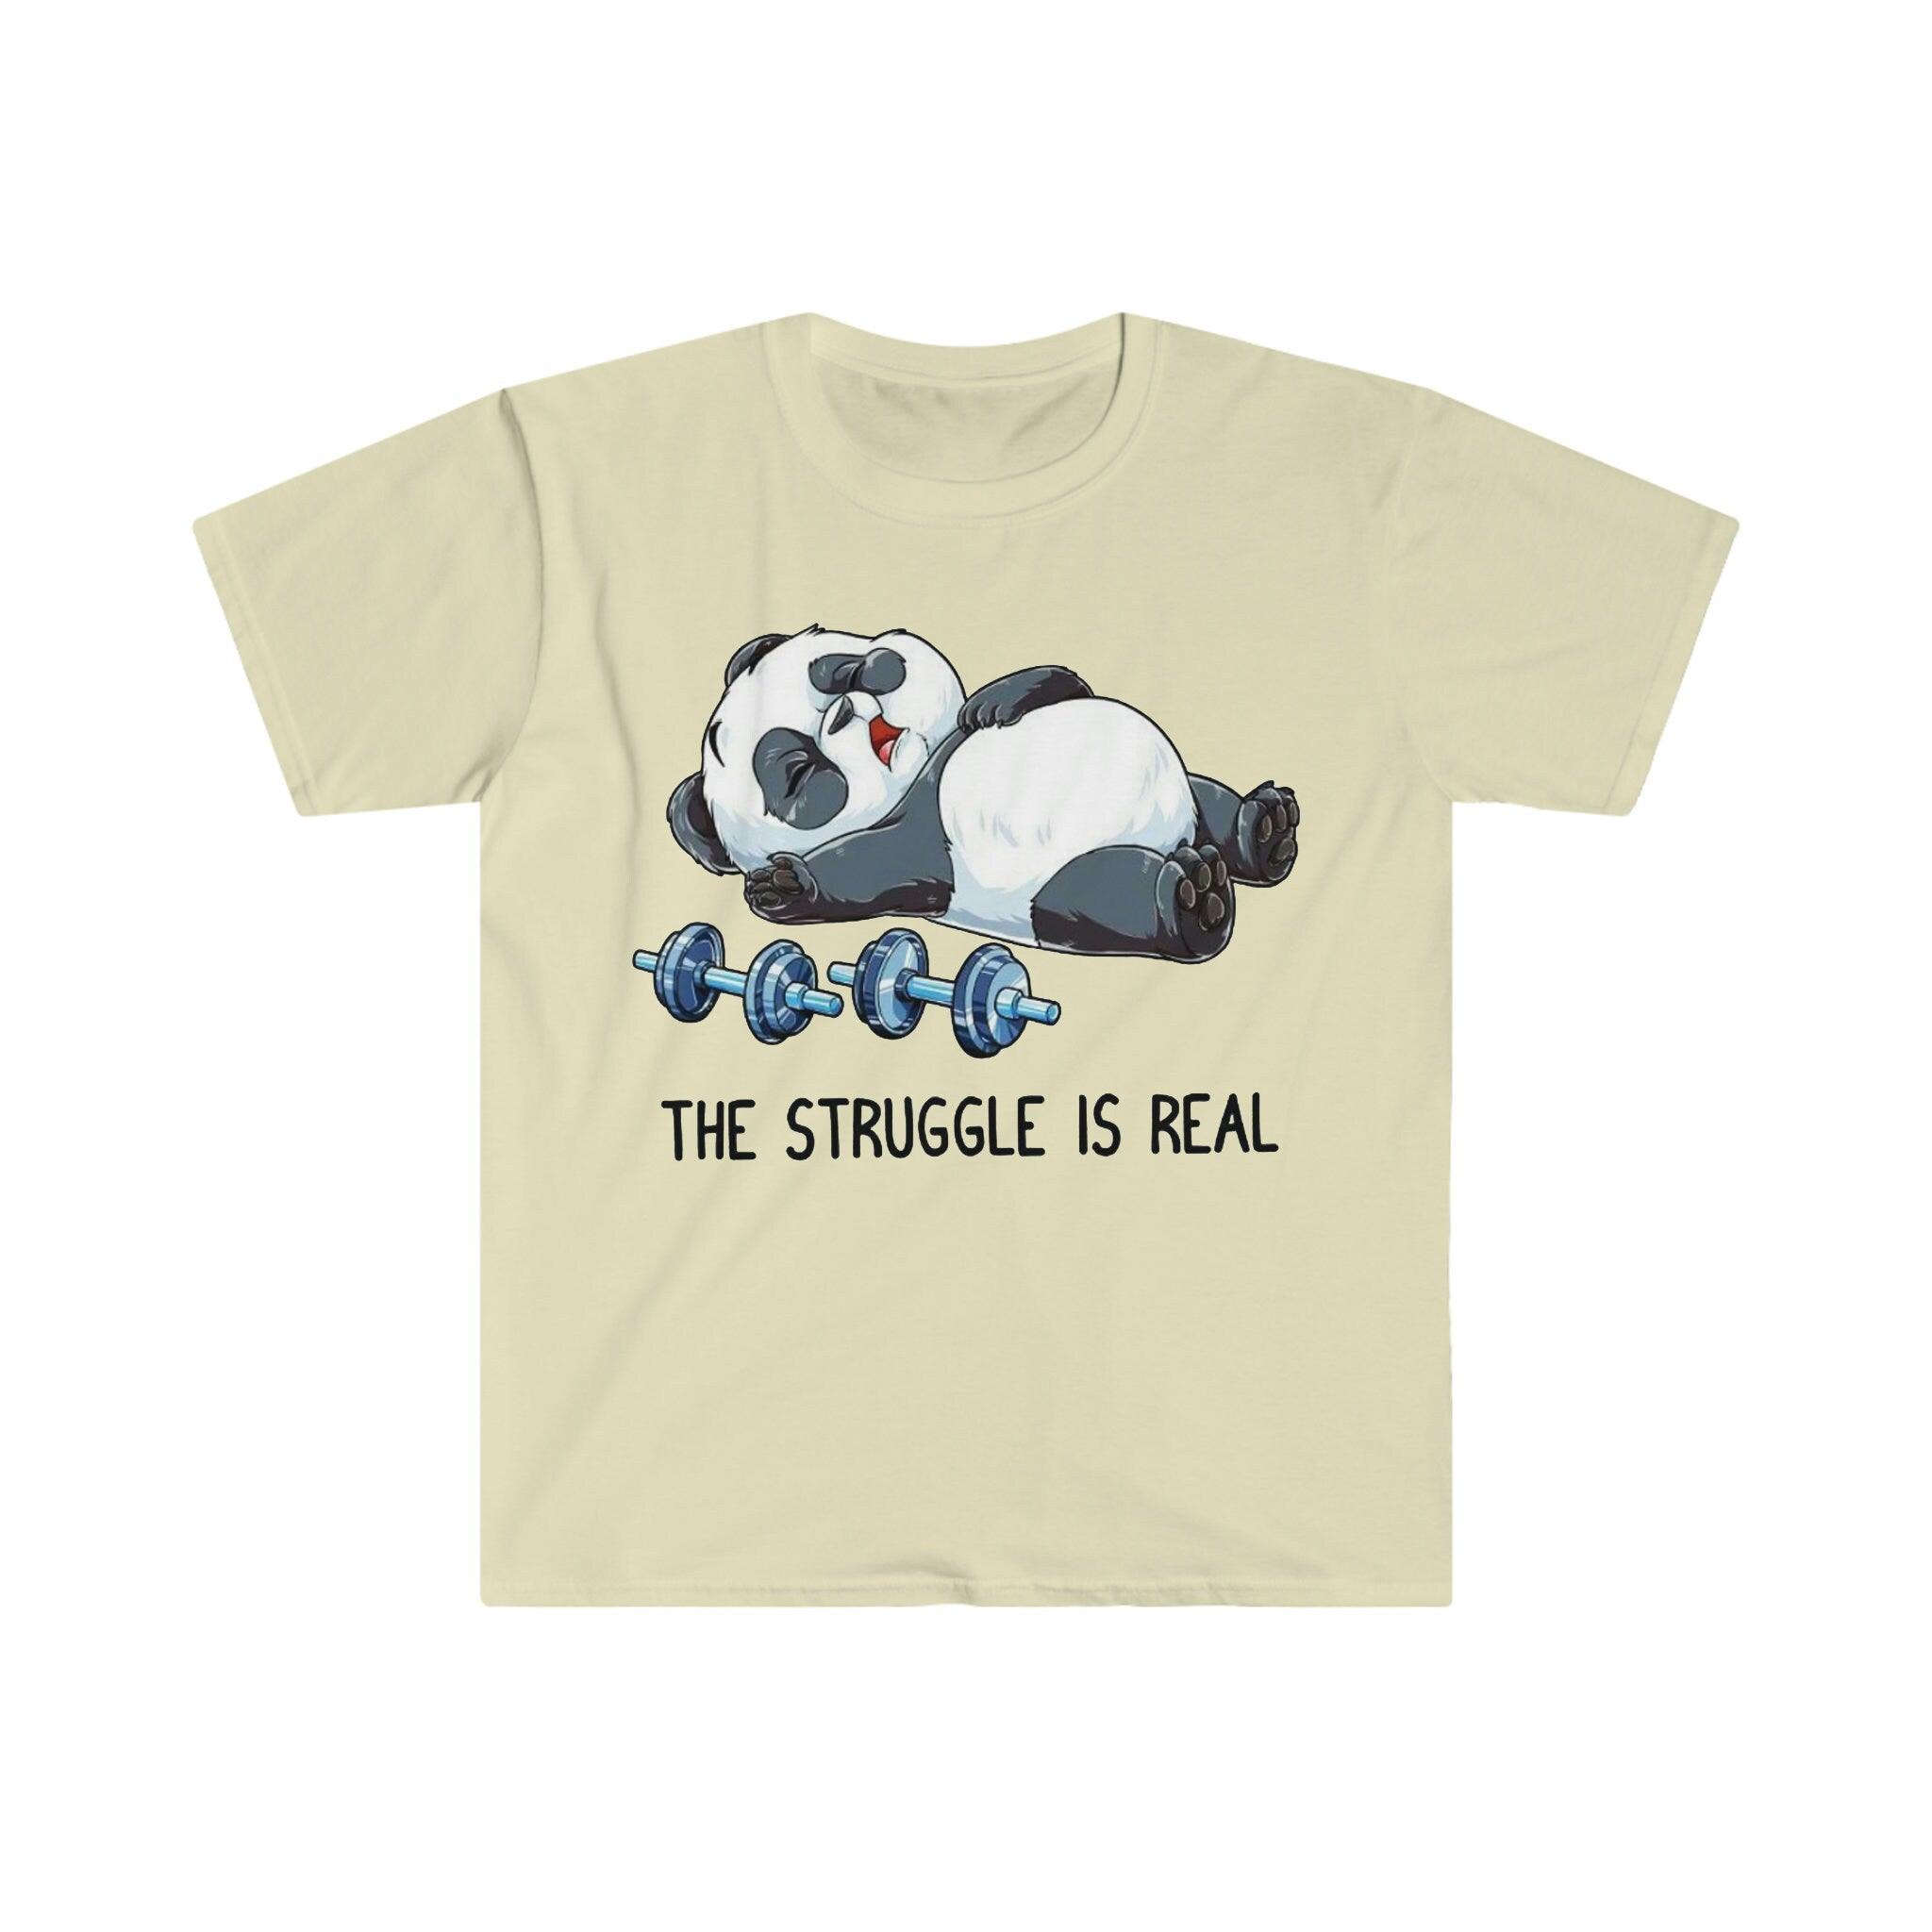 The Struggle Is Real Panda 重量挙げ T シャツ、重量挙げフィットネス ジム面白い T シャツ、ワークアウト シャツ、フィットネス シャツ ビースト モード ウェイト、面白いフィットネス、フィットネス ジム、フィットネス シャツ、面白い皮肉なジム、面白い T シャツ、ジム エクササイズ T シャツ、パンダ闘争、闘争は本物、T シャツ、T シャツ、重量挙げ、重量挙げパンダ、重量挙げ T シャツ、ワークアウト シャツ - plusminusco.com